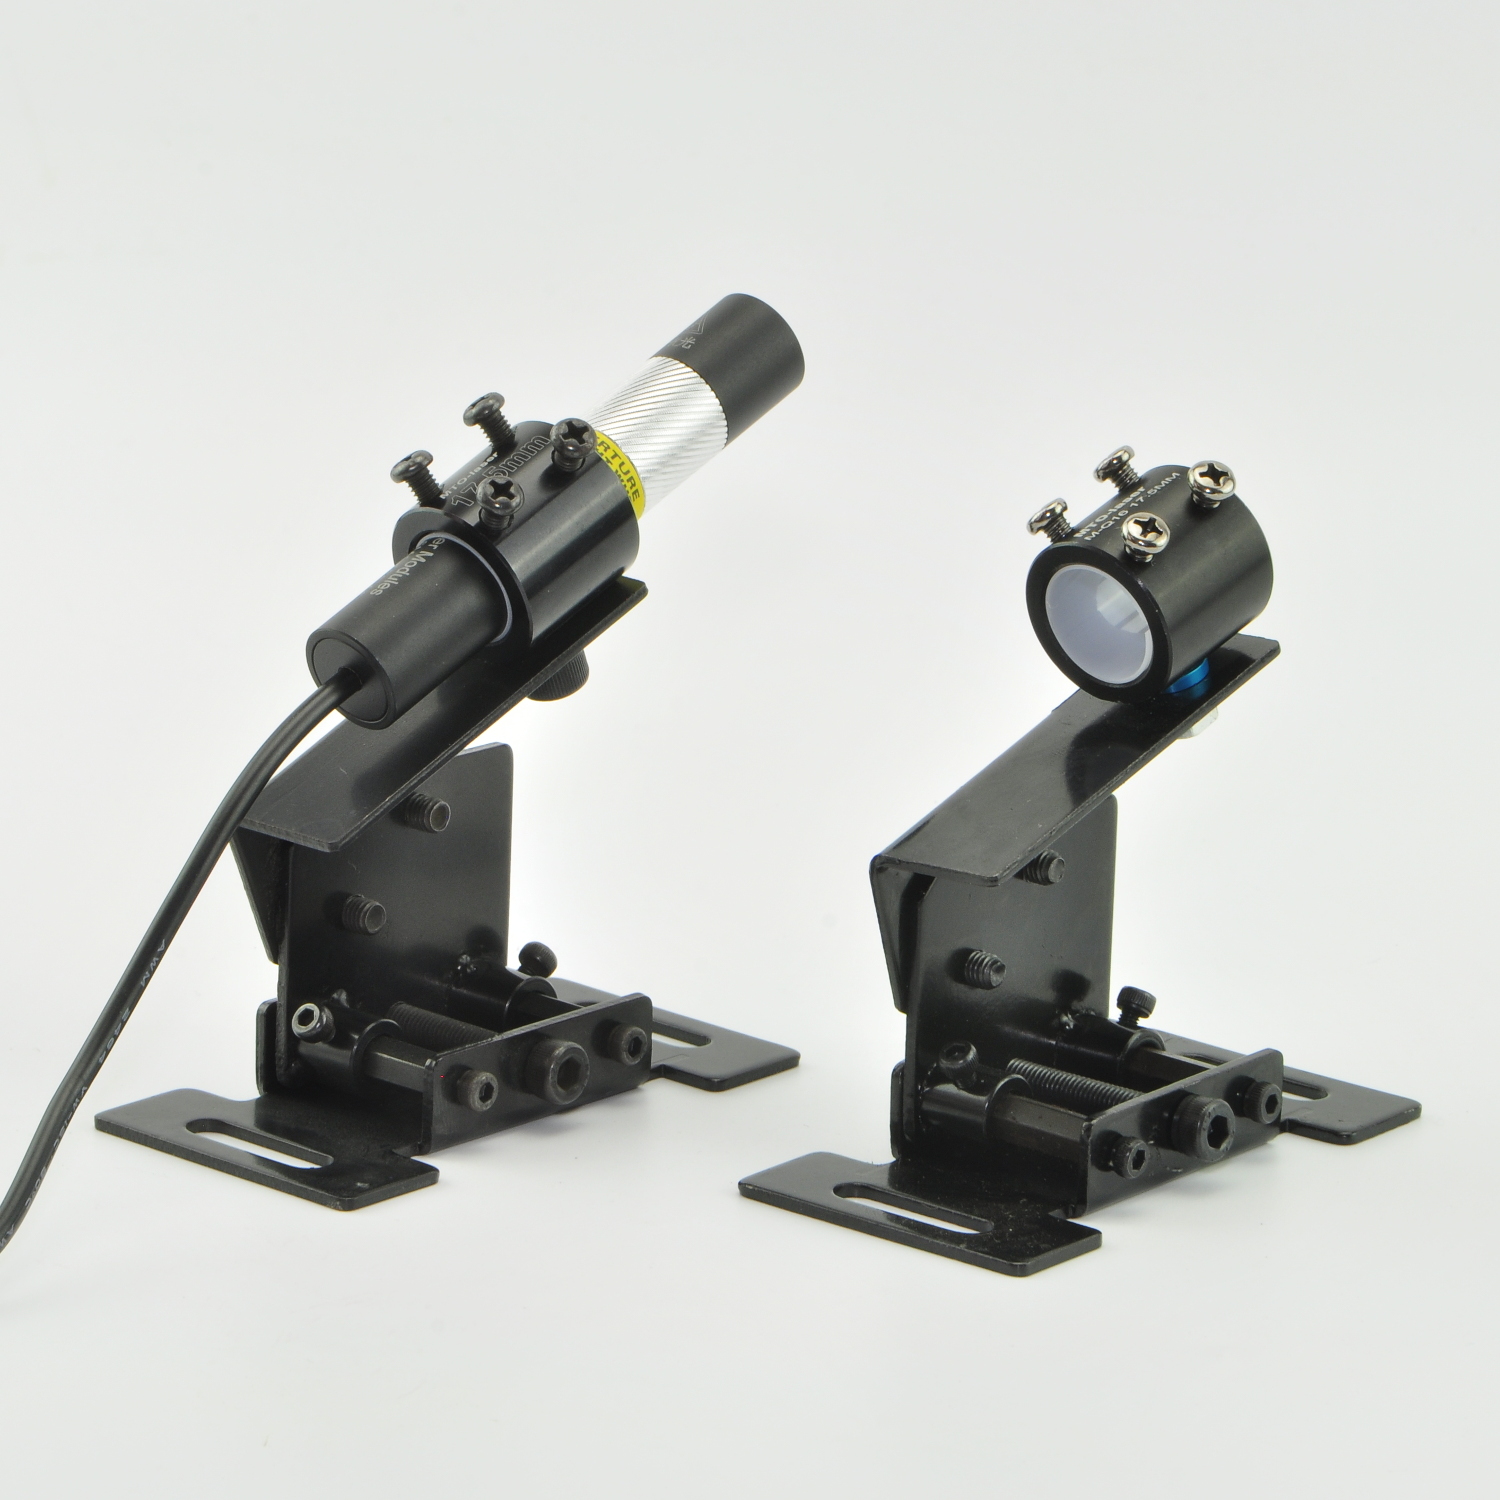 MTO HT Головка с горизонтальным расположением для крепления держателя кронштейна для 13,5 мм-23,5 мм Лазер Указатель модуля